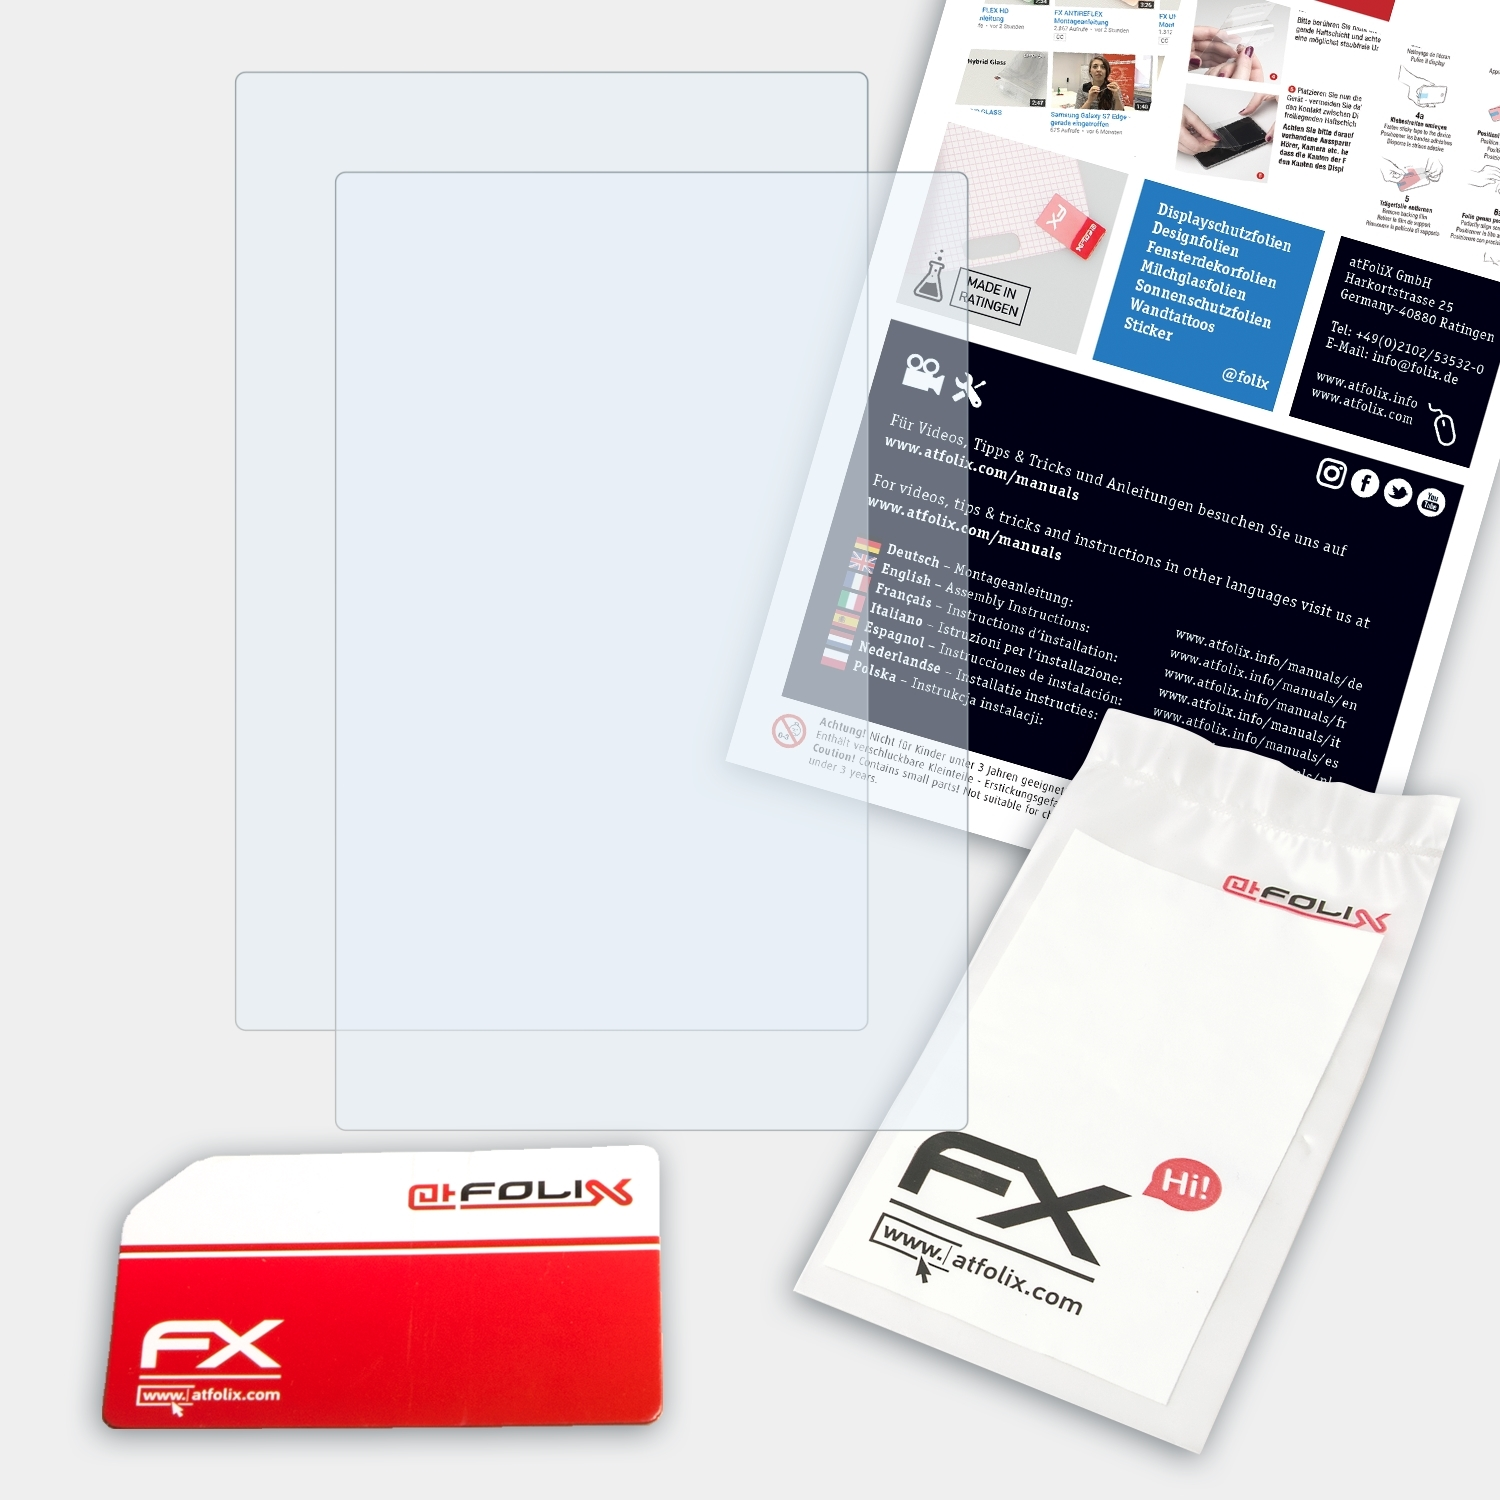 ATFOLIX 2x FX-Clear Displayschutz(für Algiz Handheld 10X)